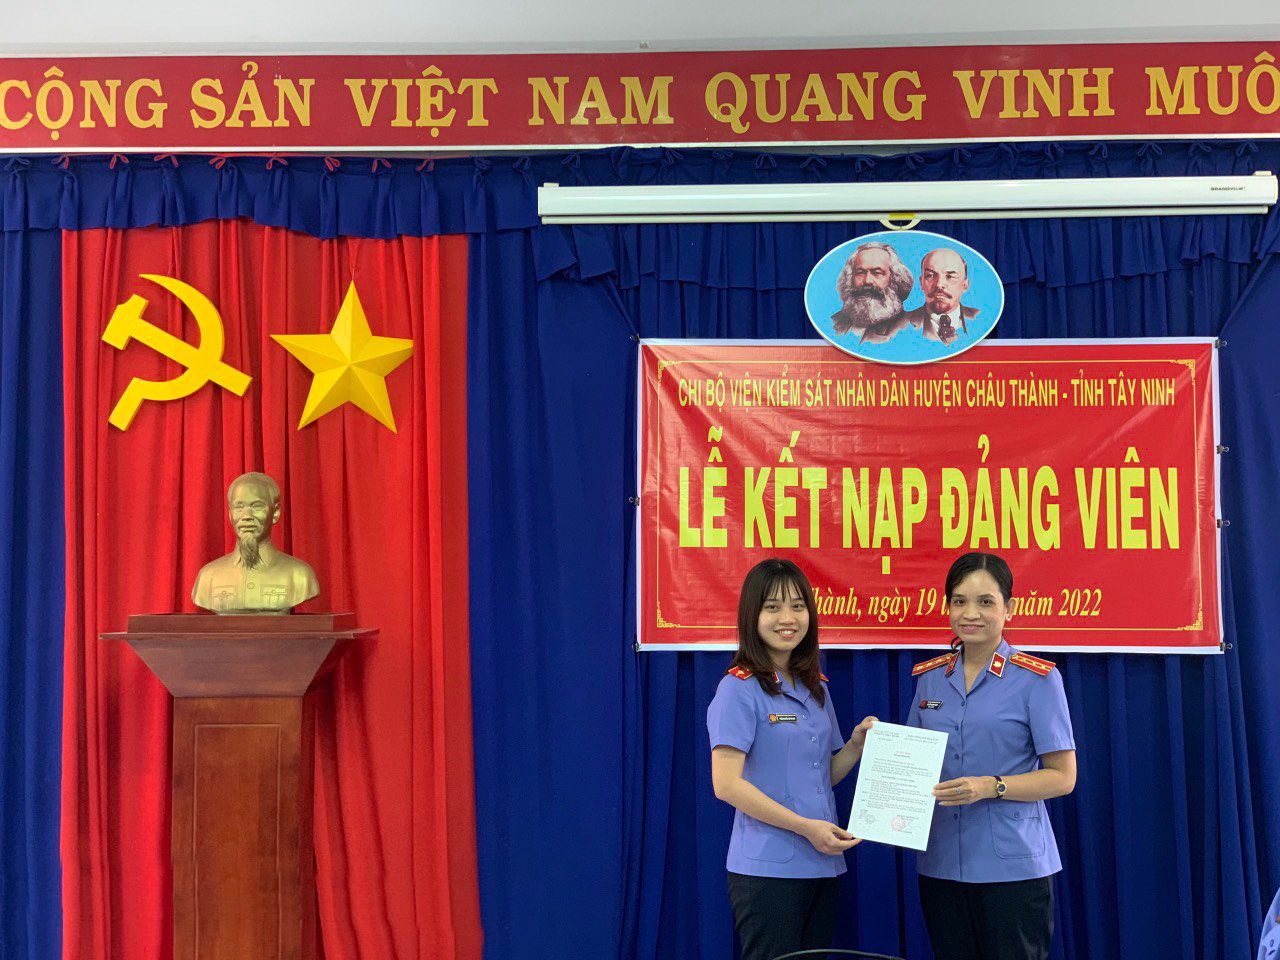 Chi bộ Viện kiểm sát nhân dân huyện Châu Thành tỉnh Tây Ninh tổ chức thành công buổi karaoke để kết nối các đảng viên. Bằng tình thân ái và sự hòa nhập thông qua âm nhạc, các đảng viên đã củng cố thêm niềm đam mê đối với Đảng Cộng sản Việt Nam và tâm huyết của mình với sự nghiệp xây dựng và phát triển đất nước.